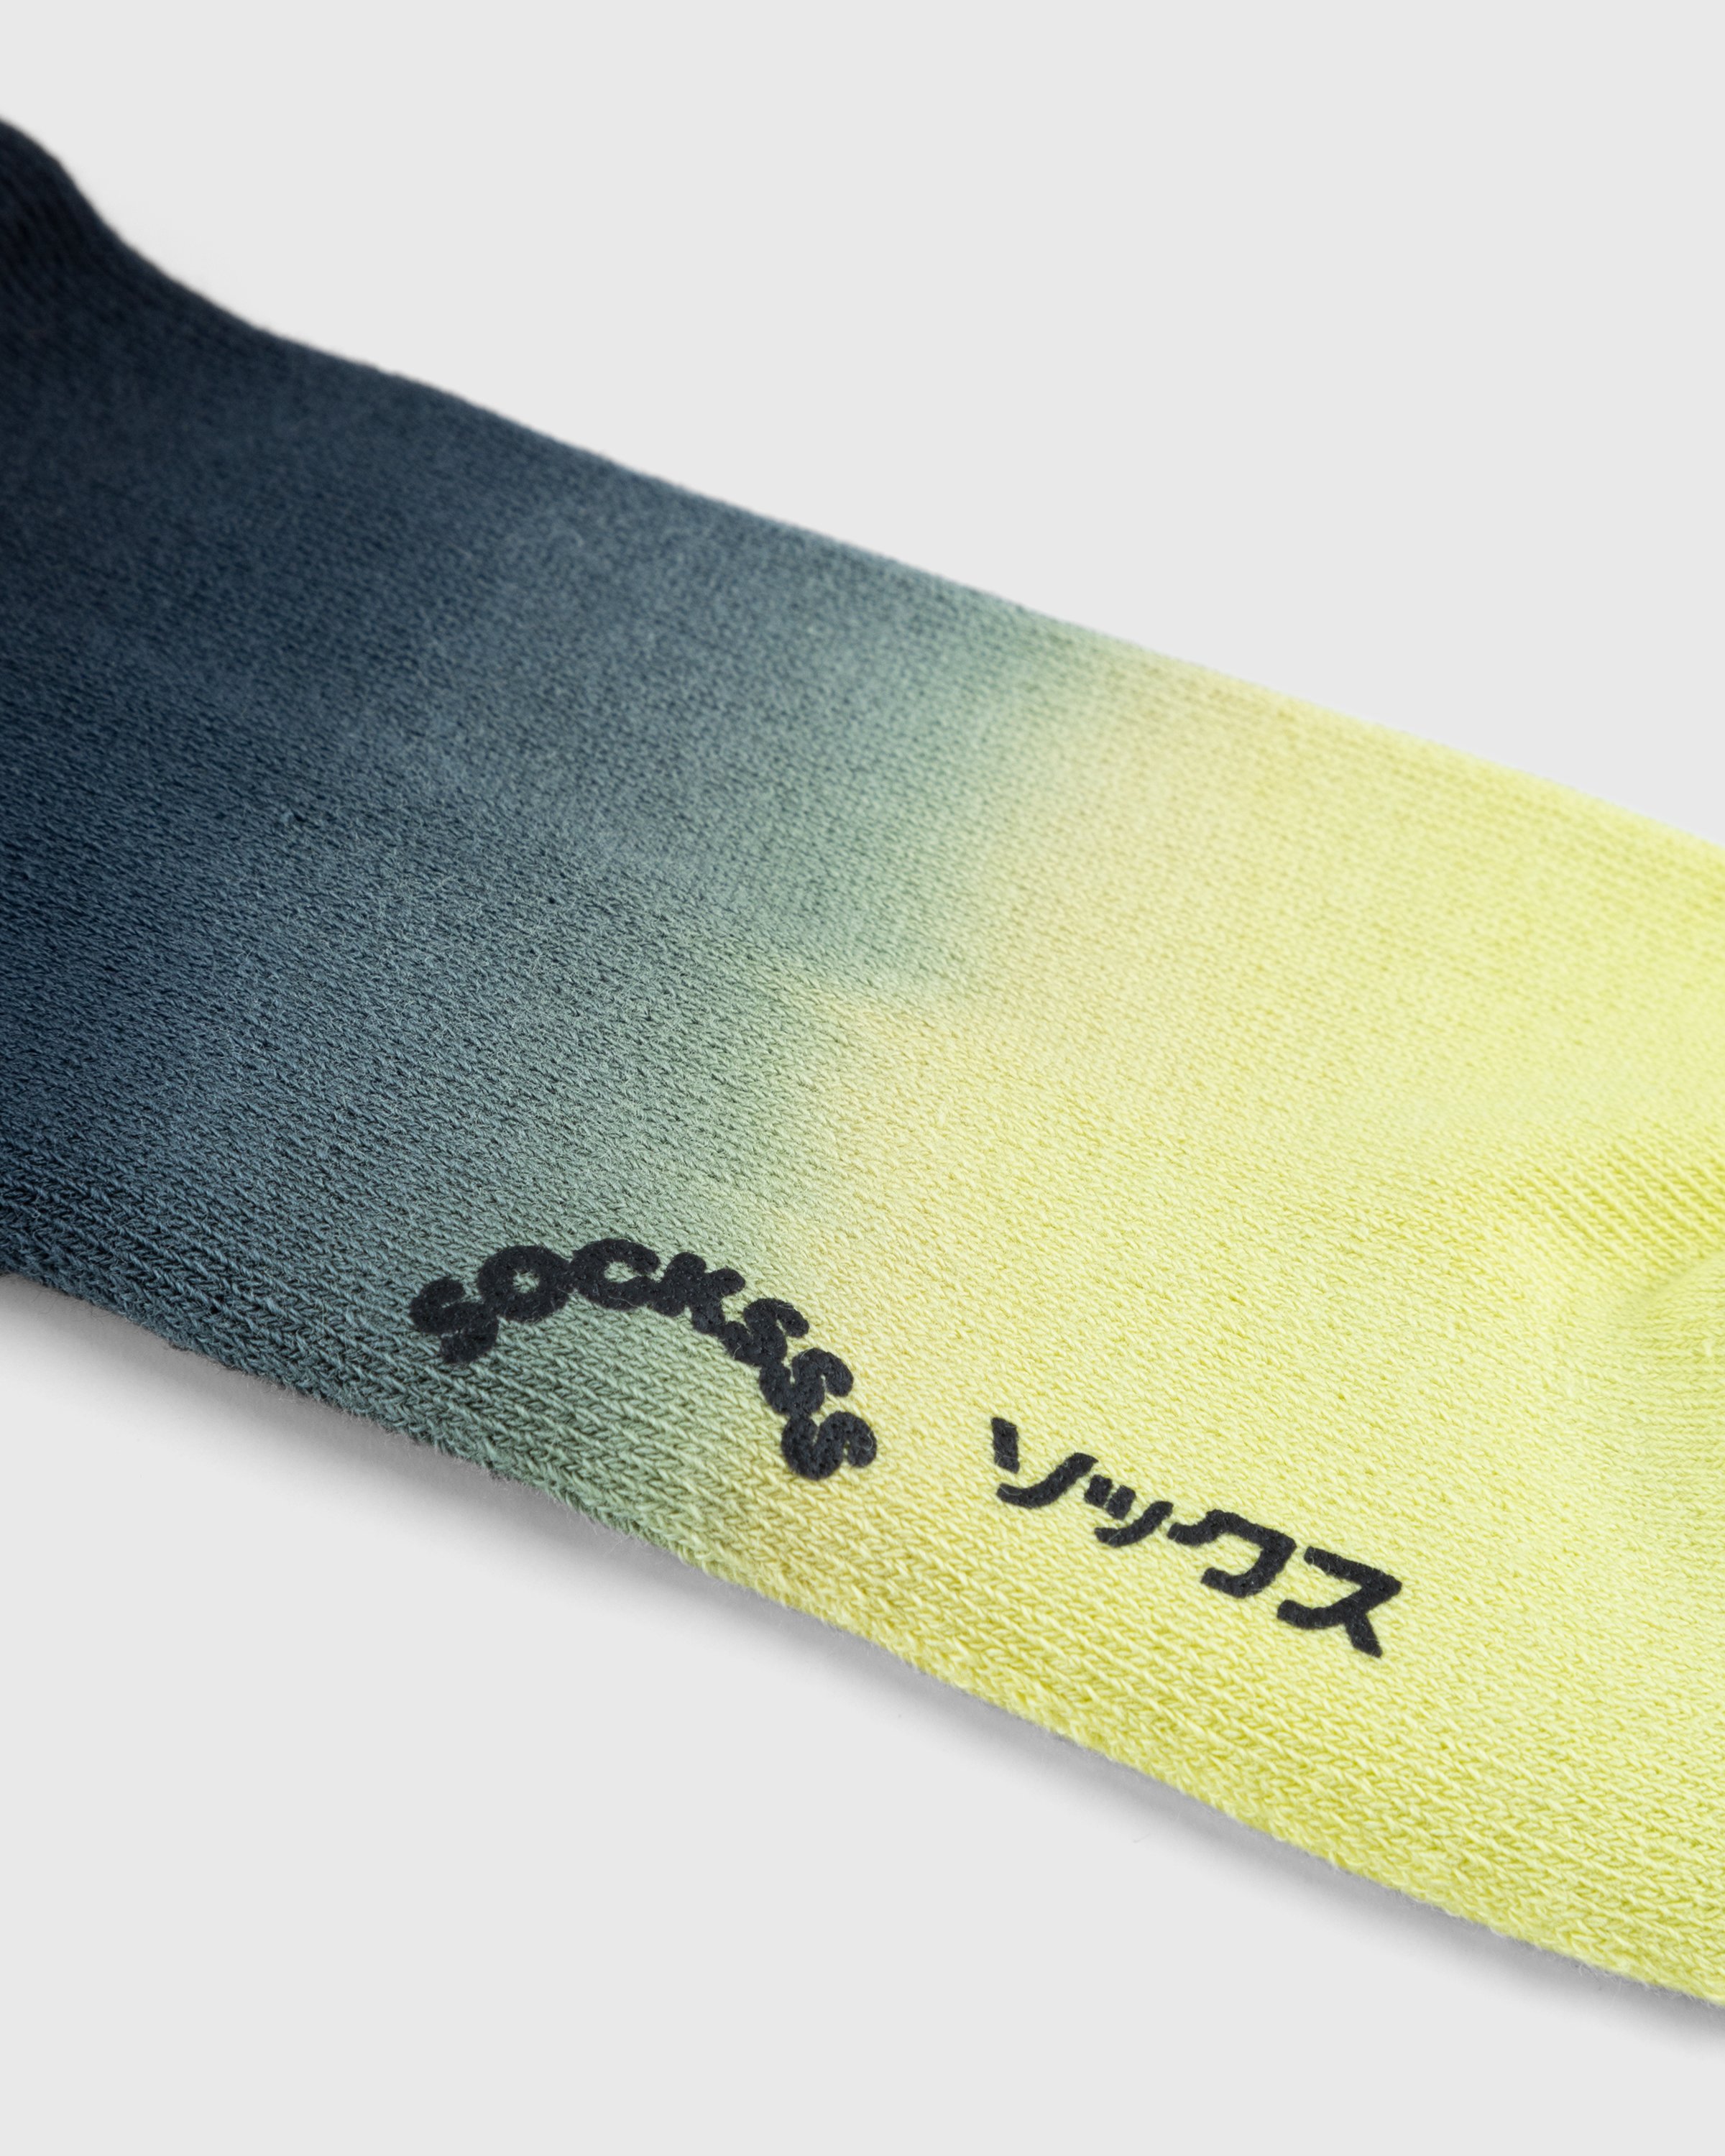 Socksss - Prainha Socks - Accessories - Multi - Image 3